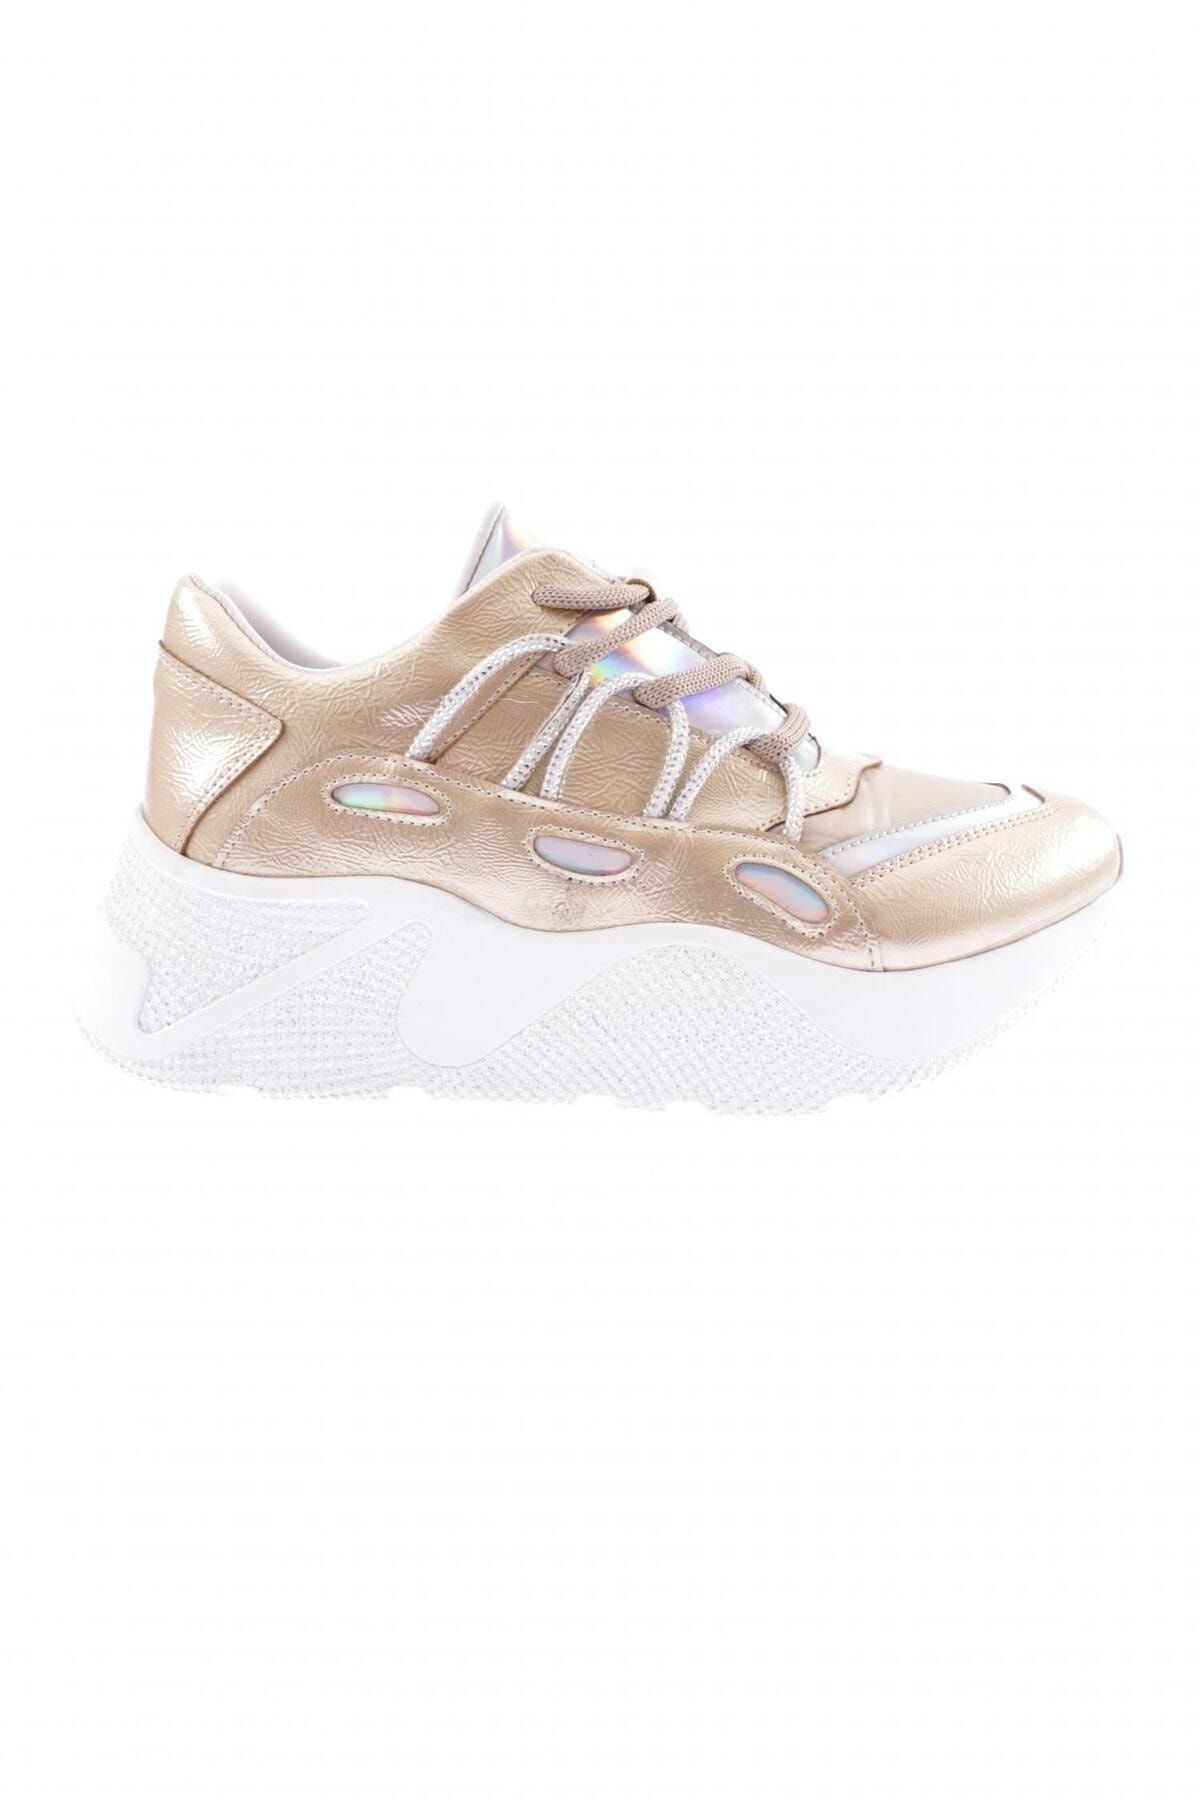 Dgn 916-23y Kadın Kalın Taban Tsilver Ip Taşlı Sneakers Ayakkabı Altın